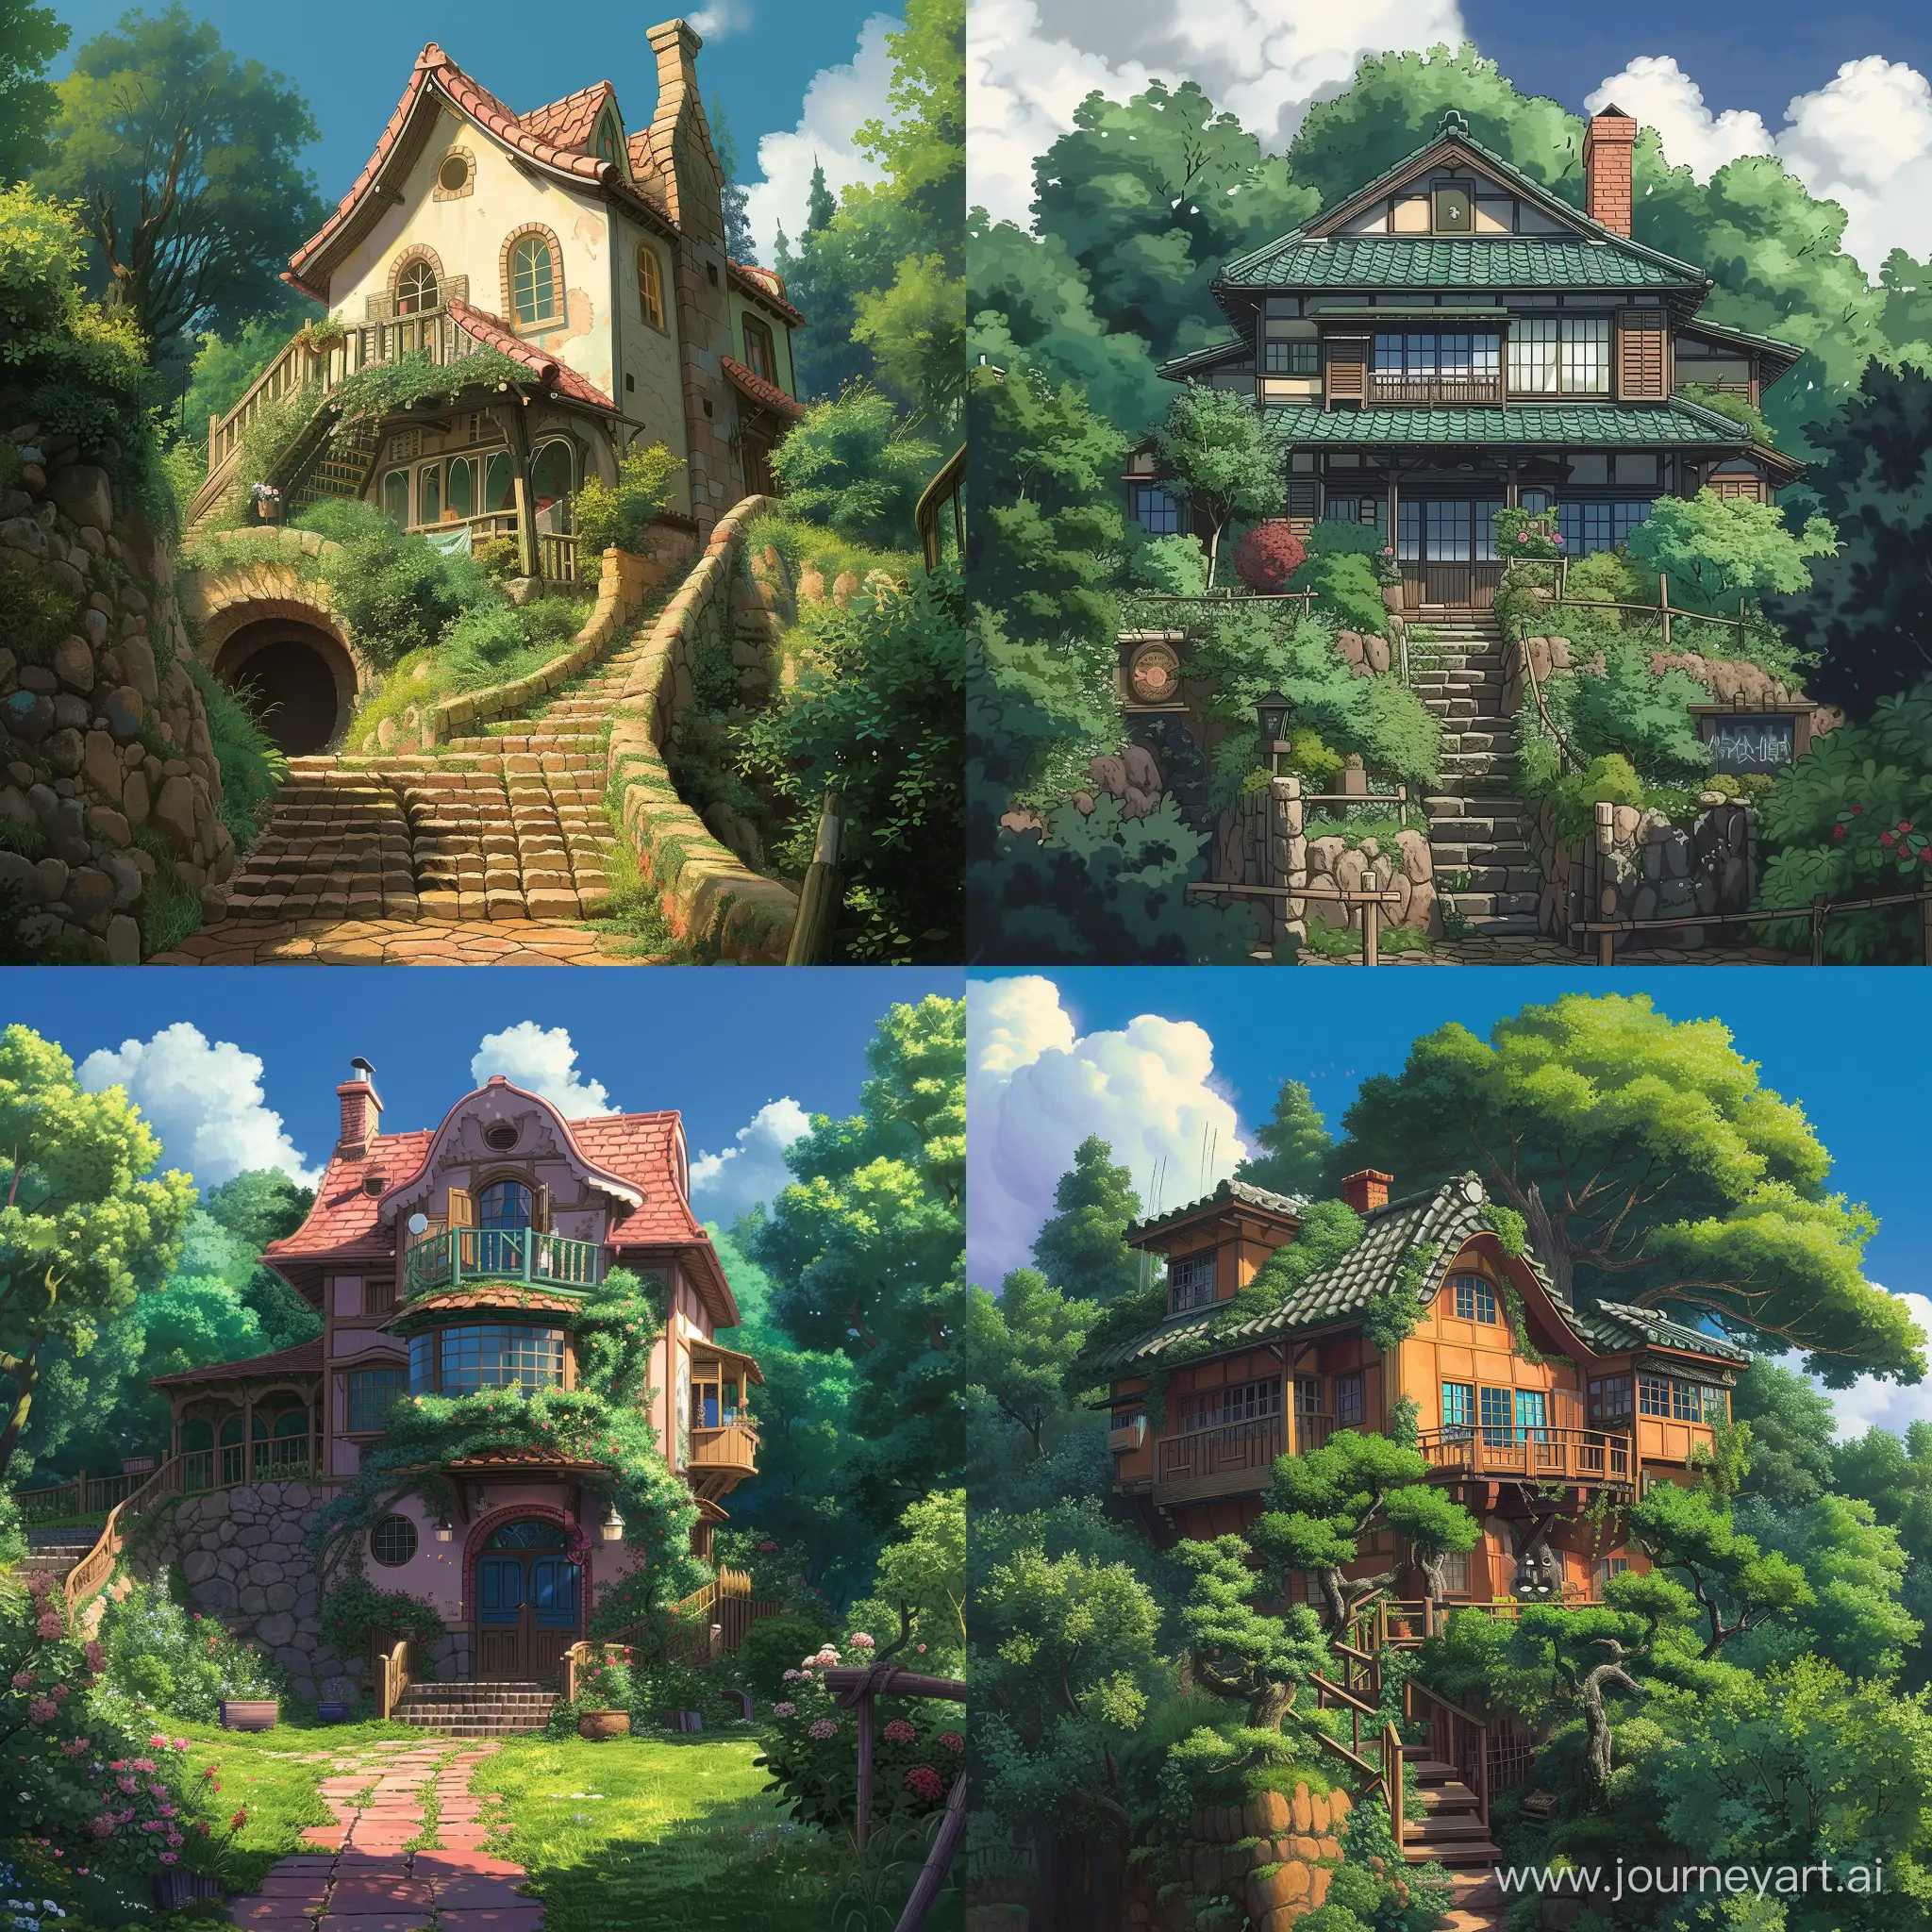 A Ghibli-inspired house in a Ghibli-anime